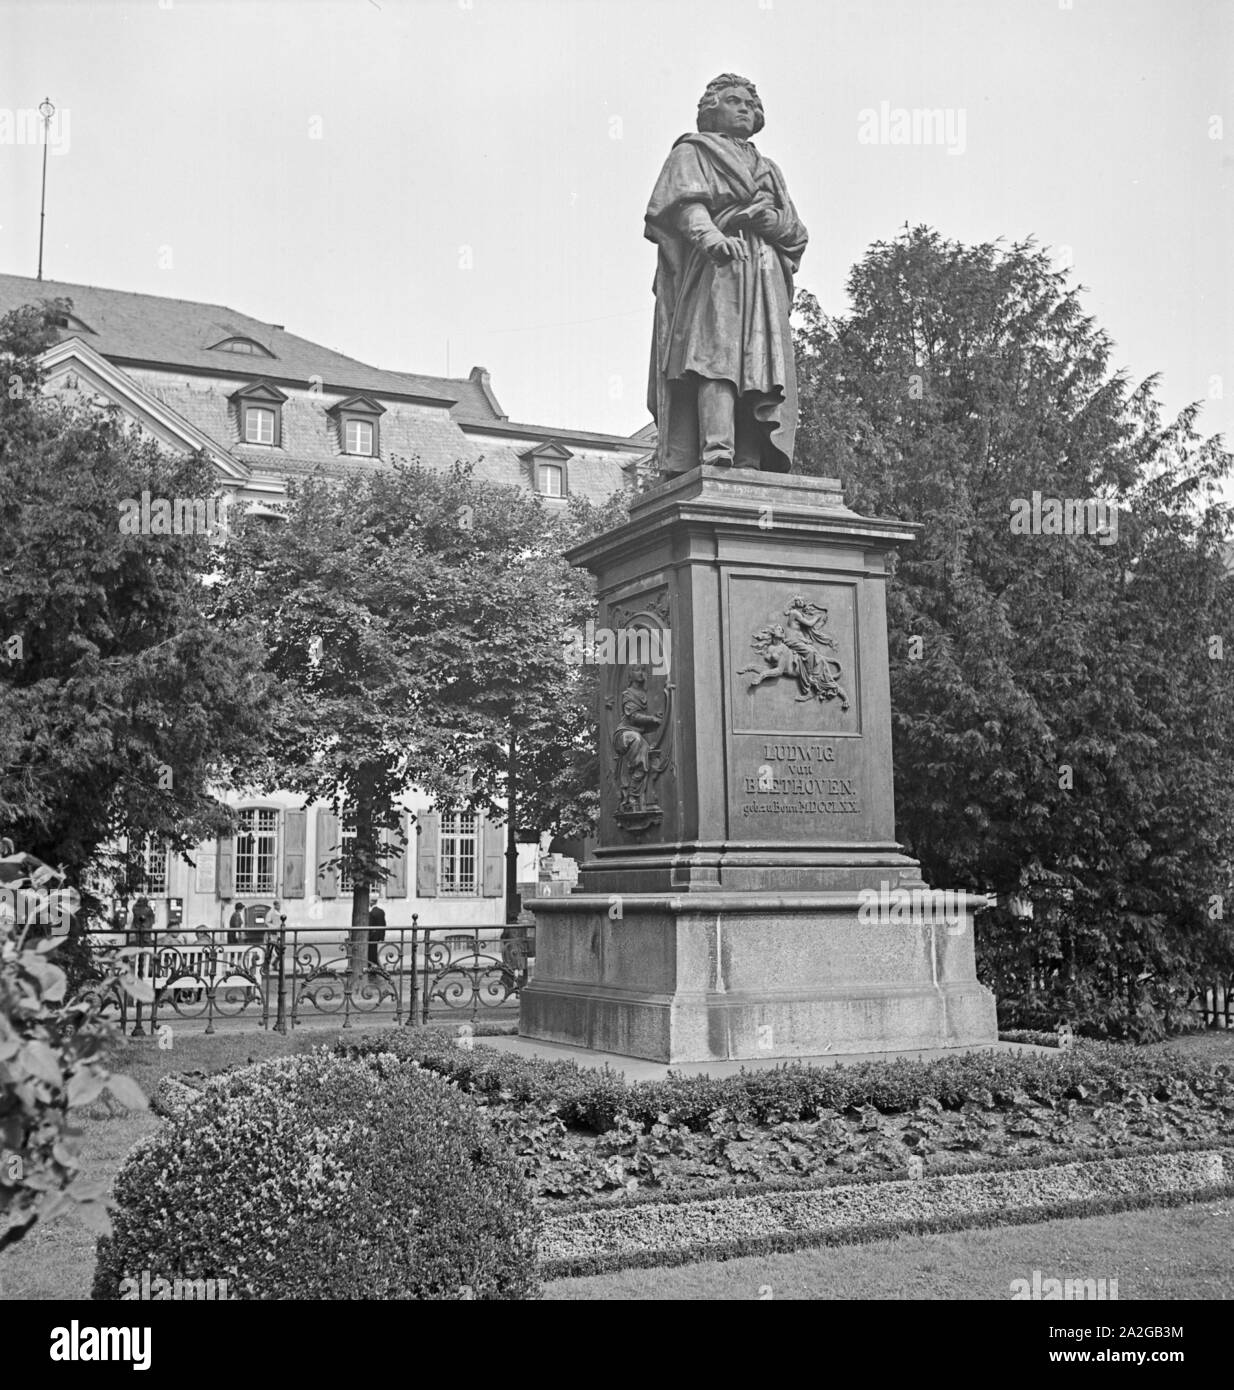 Das Beethoven Denkmal im Stadtkern von Bonn, Deutschland 1930er Jahre. Beethoven Denkmal am Bonner Innenstadt, Deutschland 1930. Stockfoto